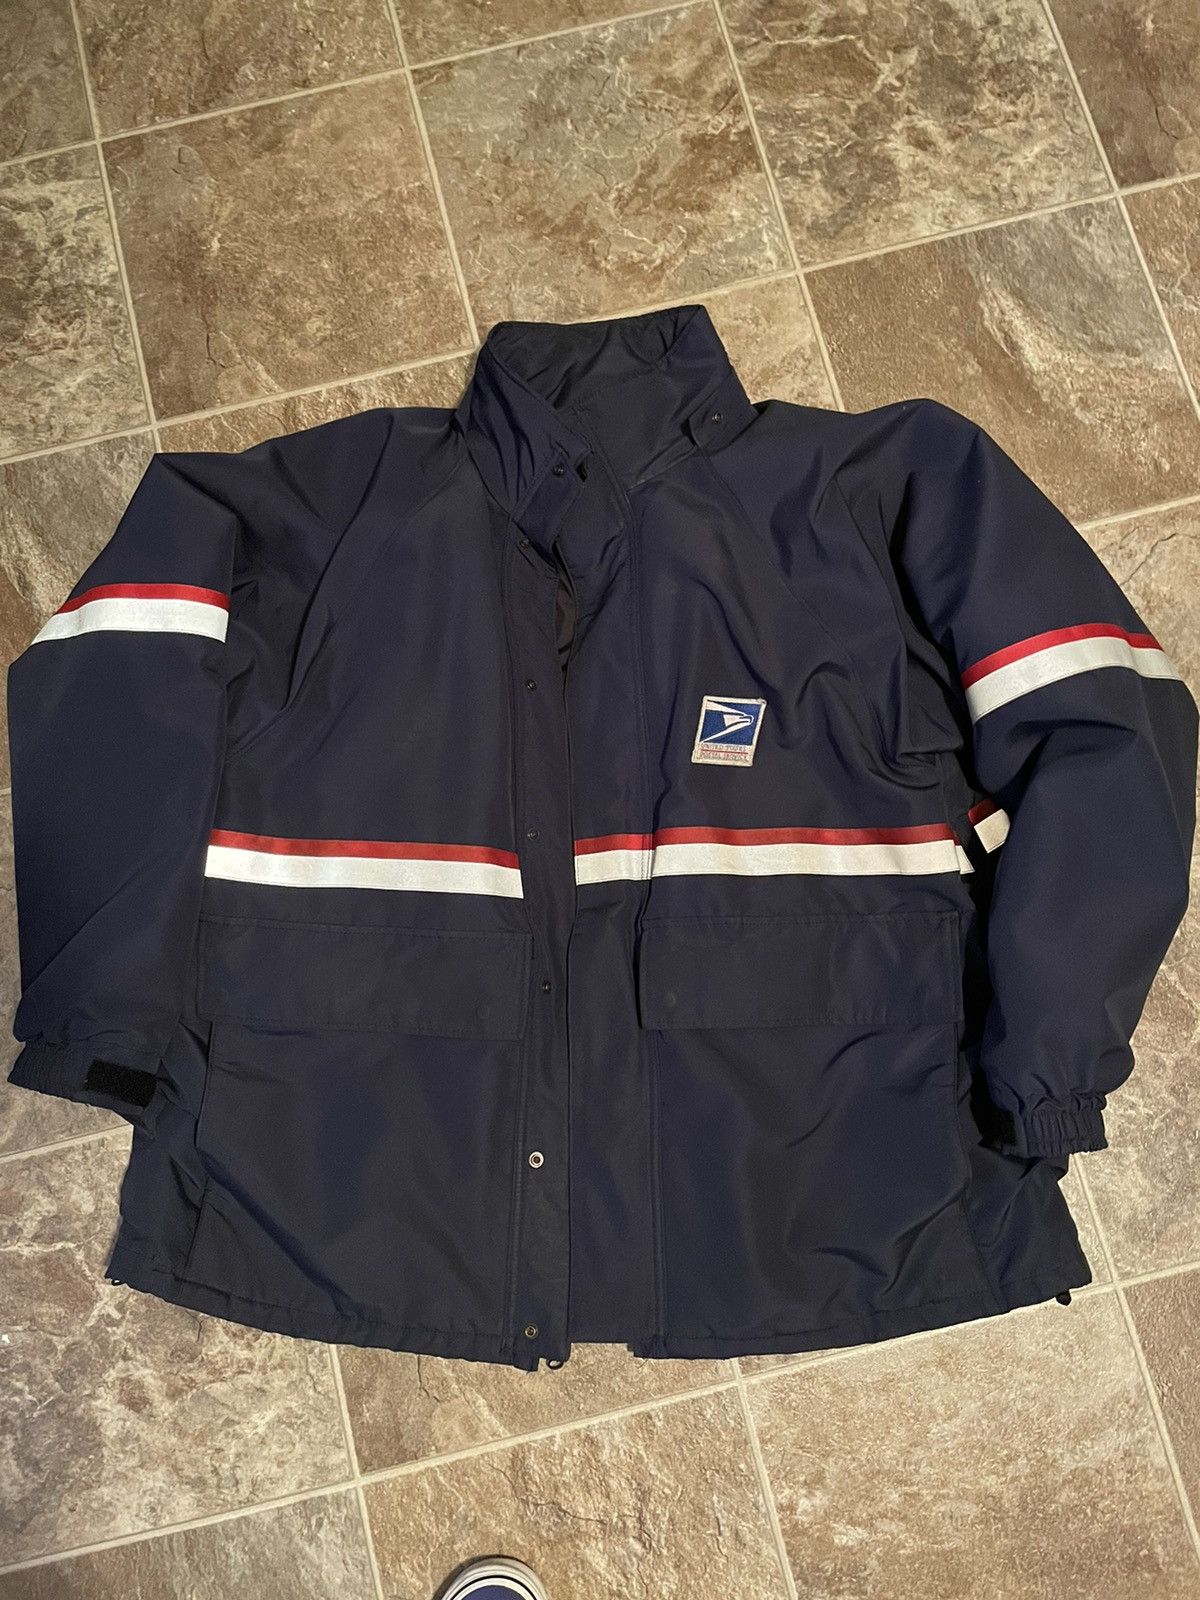 Vintage Vintage USPS Jacket | Grailed